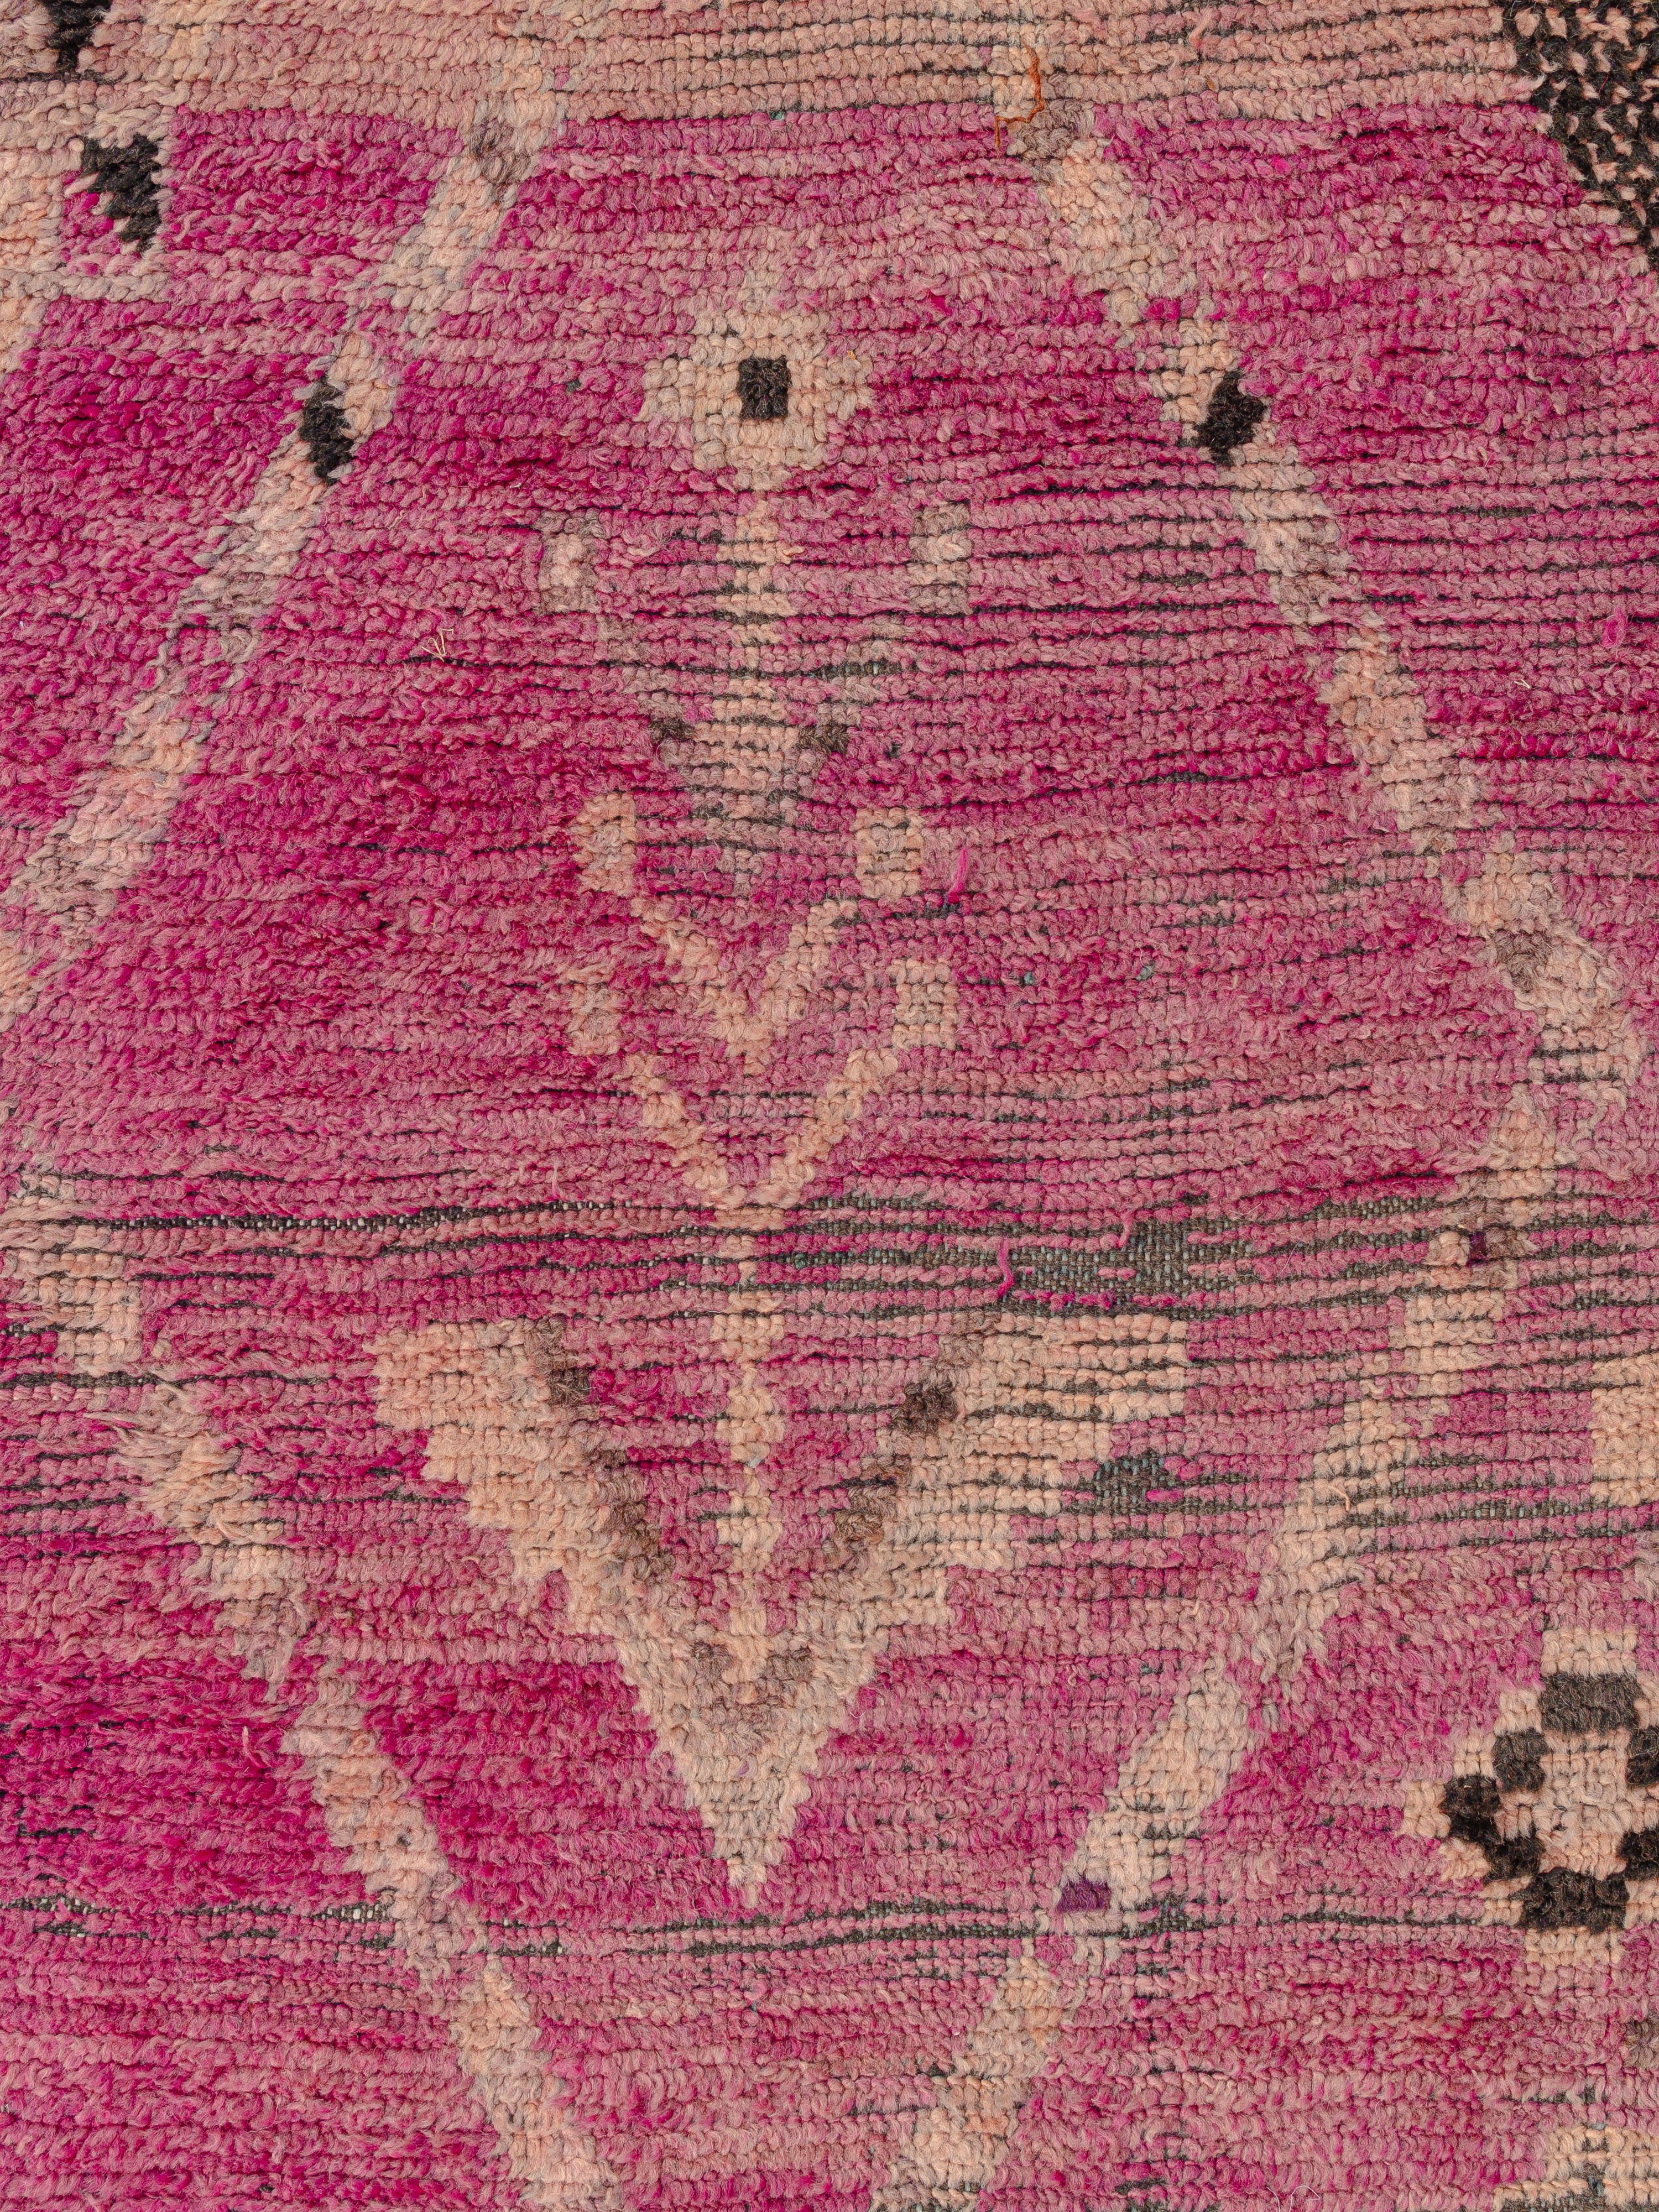 Un tapis intrigant de la région des plaines au sud-ouest de Marrakech, plein de caractère et d'une patine bien aimée. Deux motifs opposés à double hache près du centre de la composition reflètent l'harmonie entre la symbolique masculine et féminine.